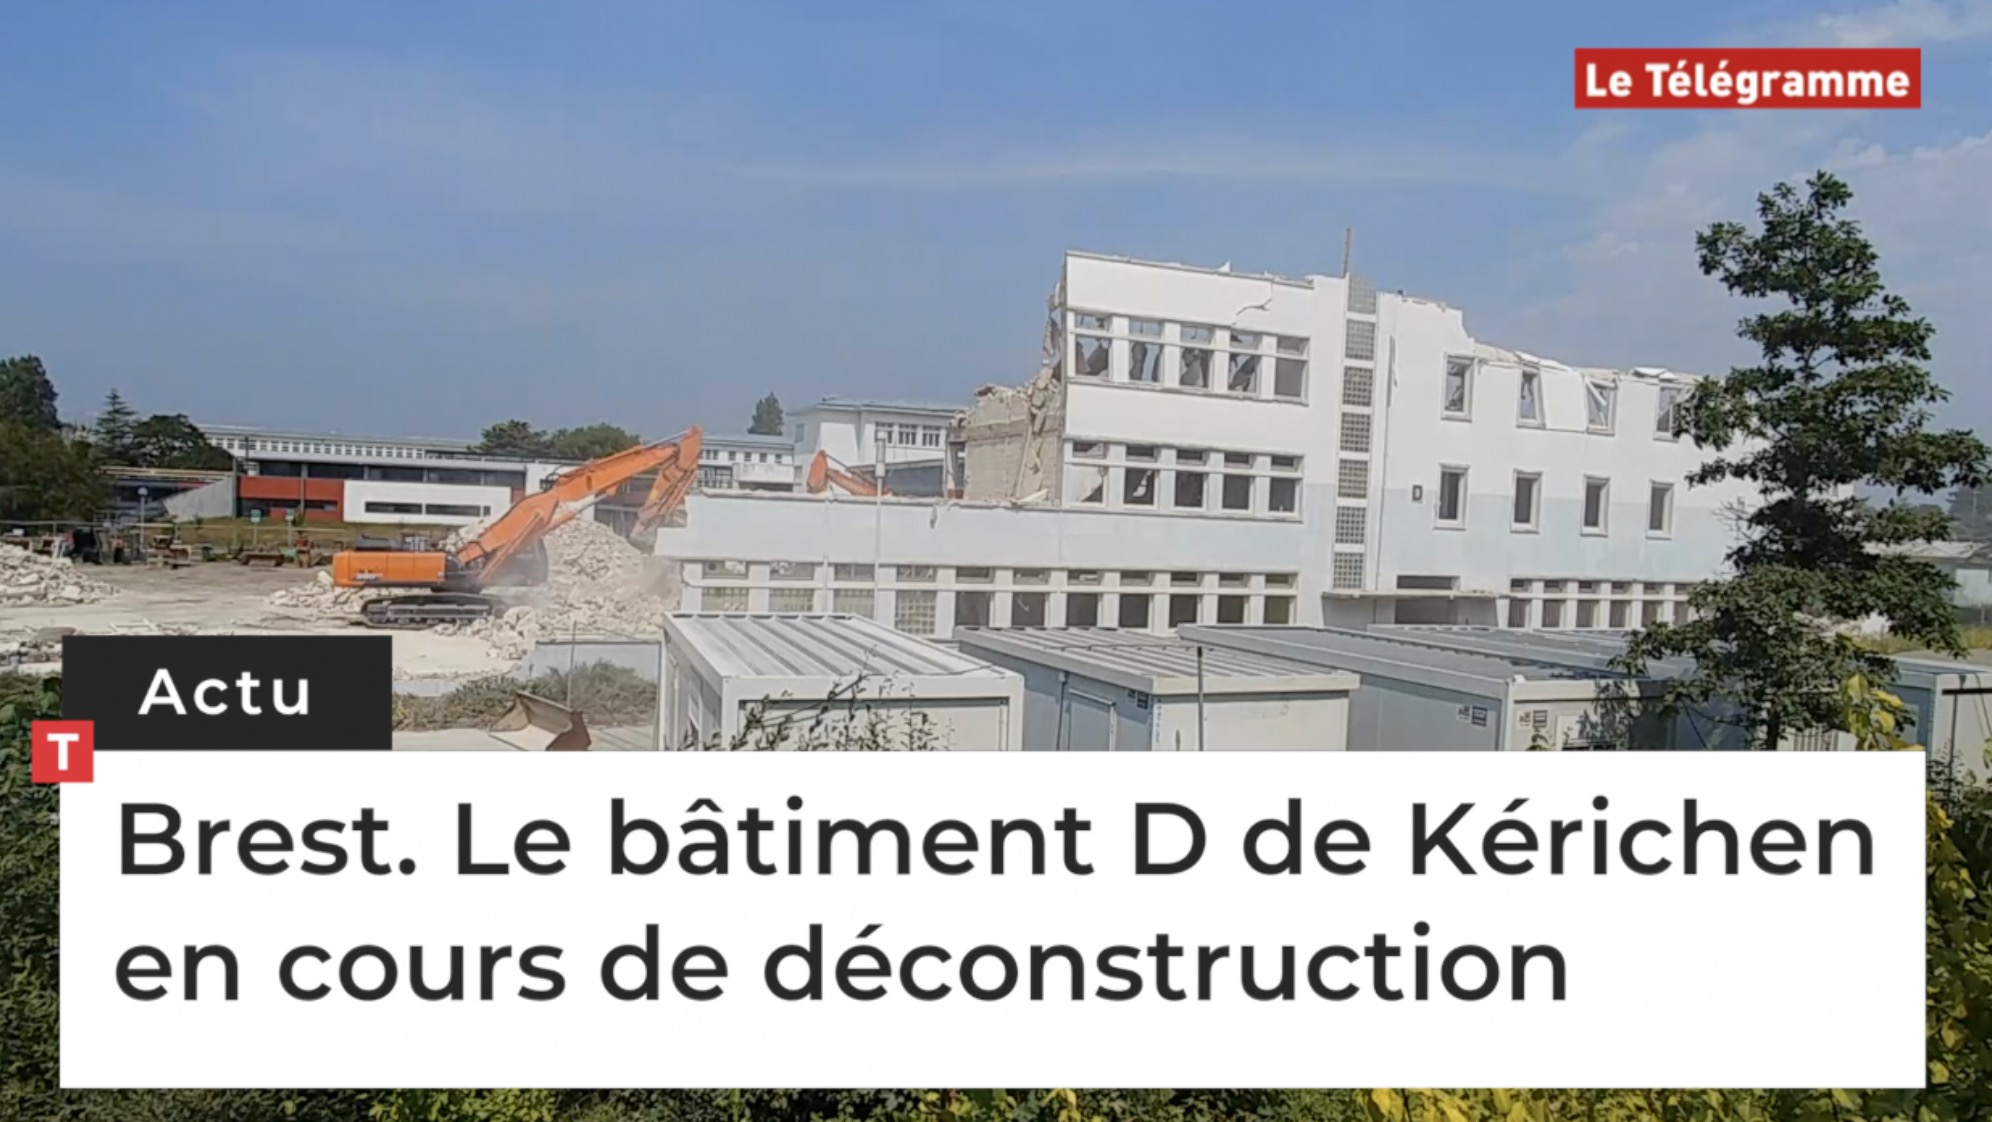 Brest. Le bâtiment D de Kérichen en cours de déconstruction (Le Télégramme)